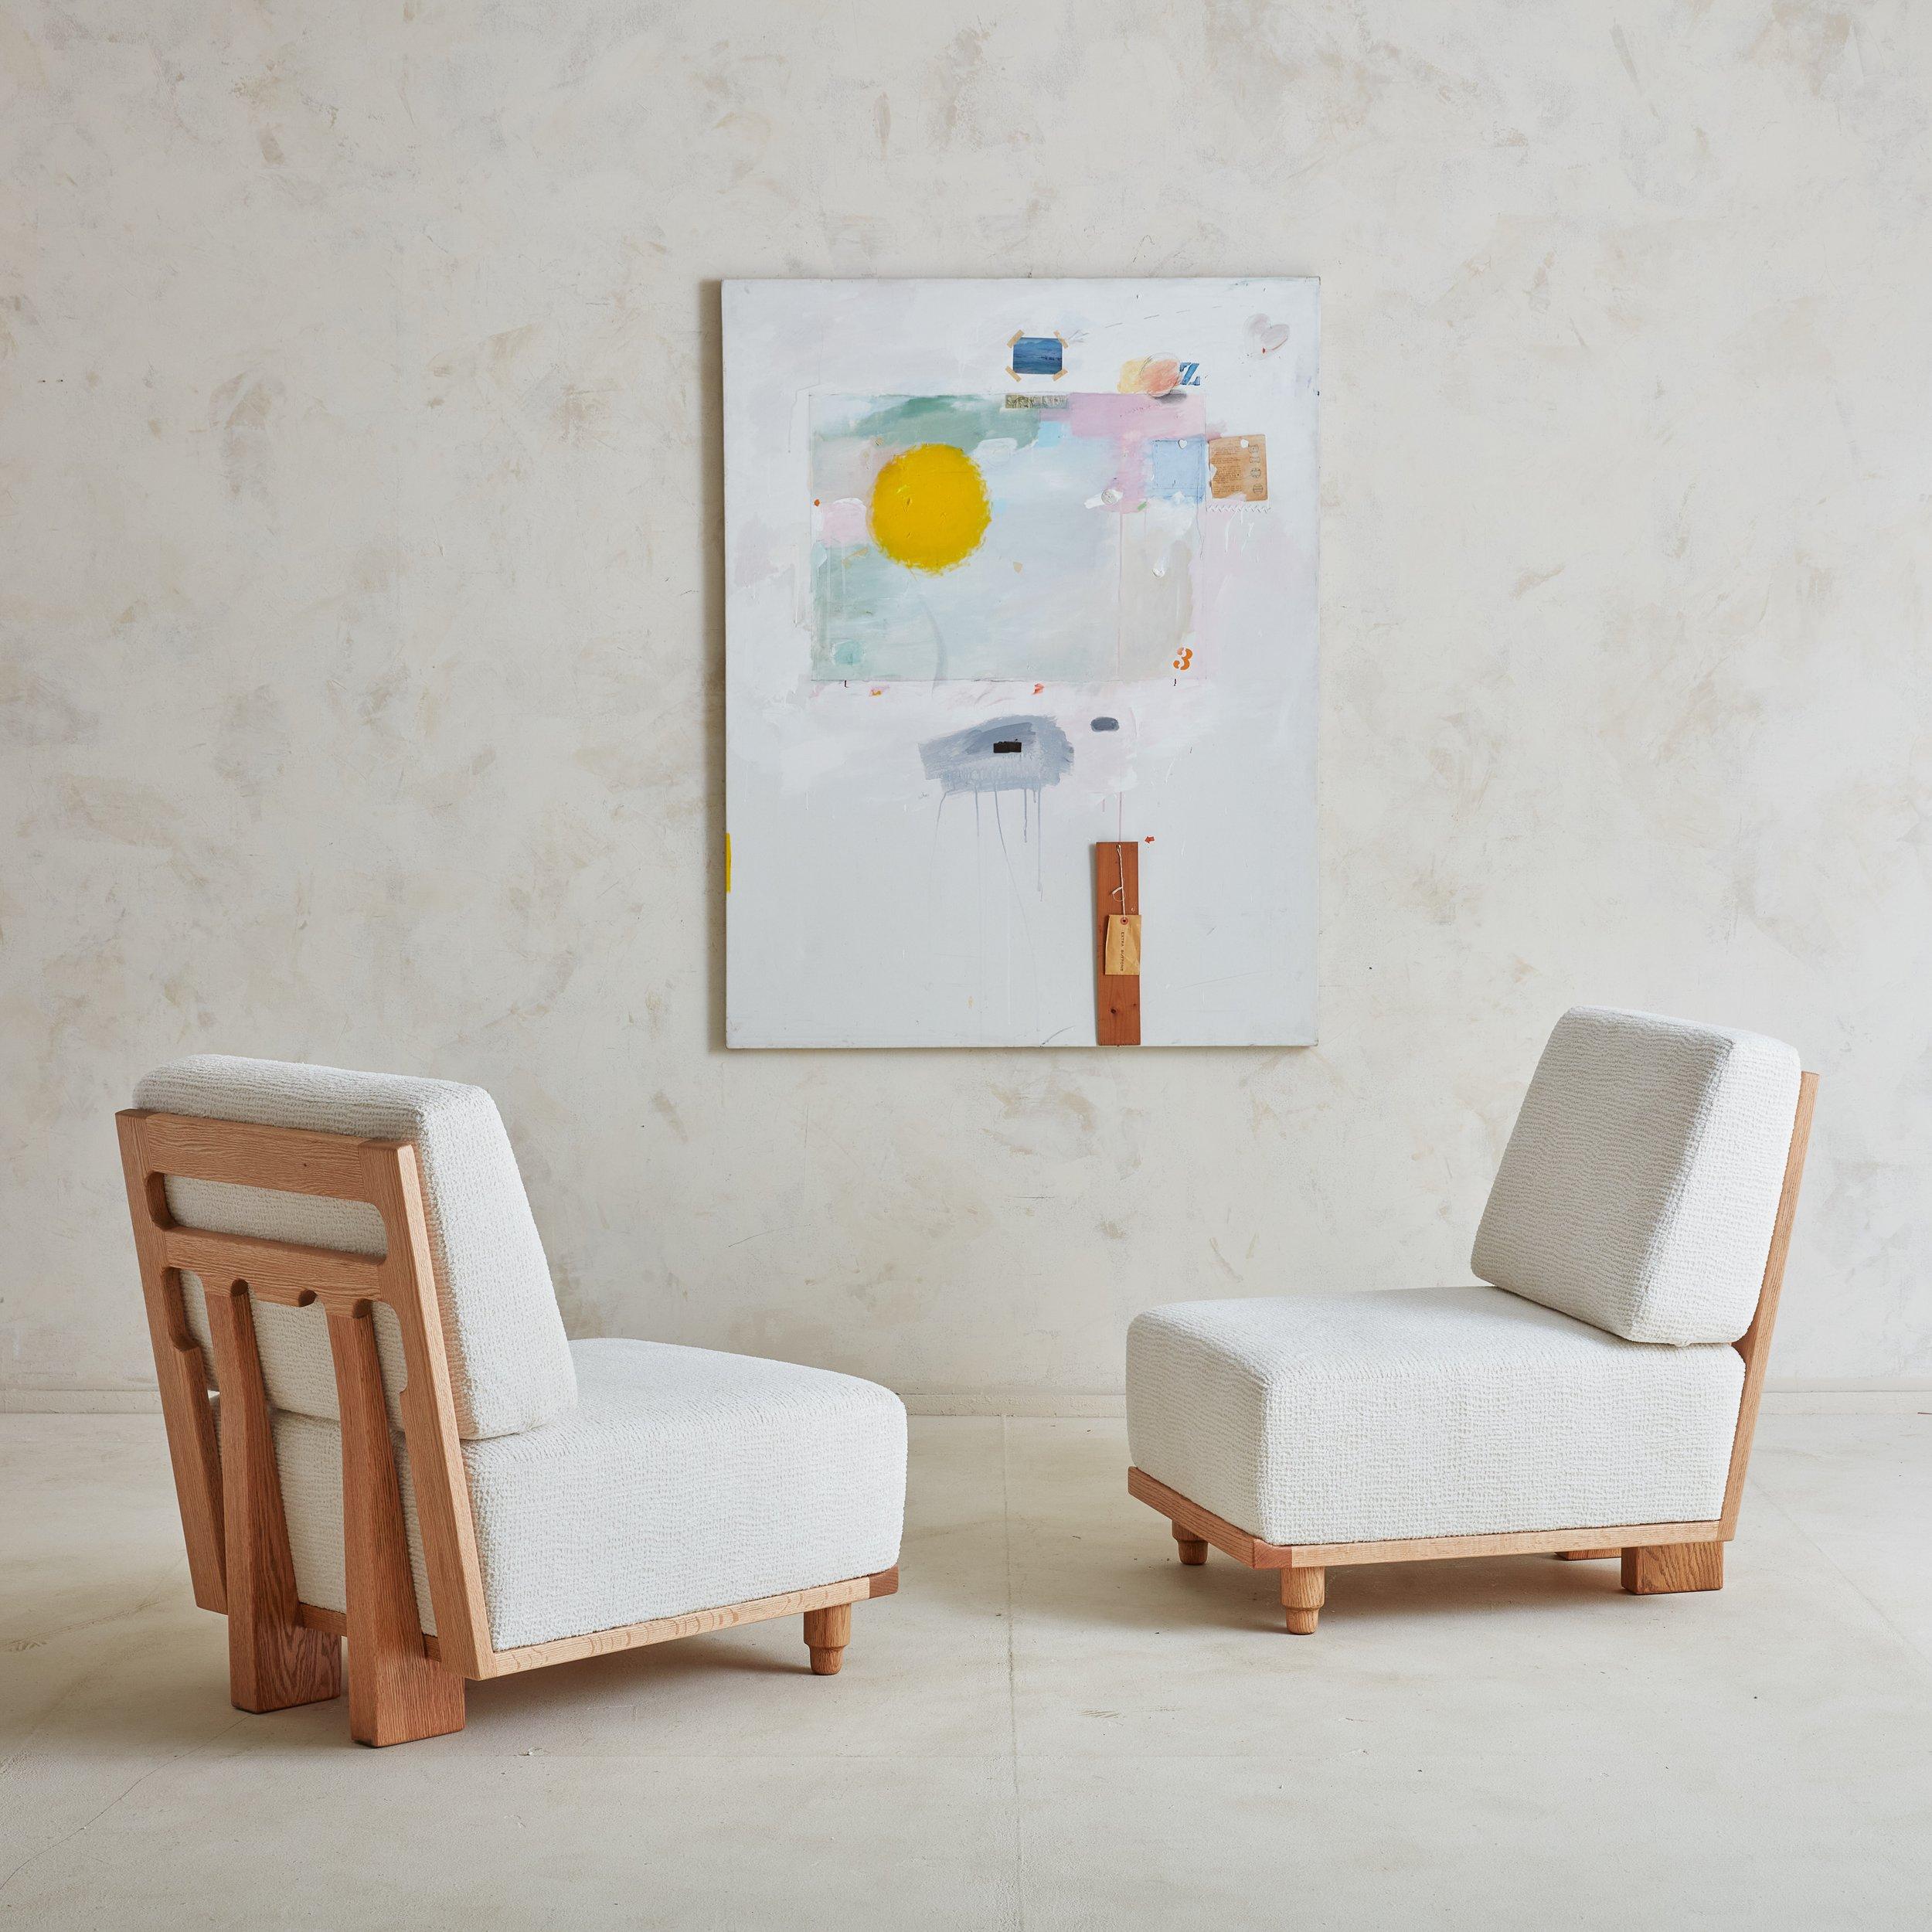 Elmyre-Stuhl von Guillerme et Chambron, Frankreich, 1960er Jahre, 2 Stück verfügbar (Moderne der Mitte des Jahrhunderts)